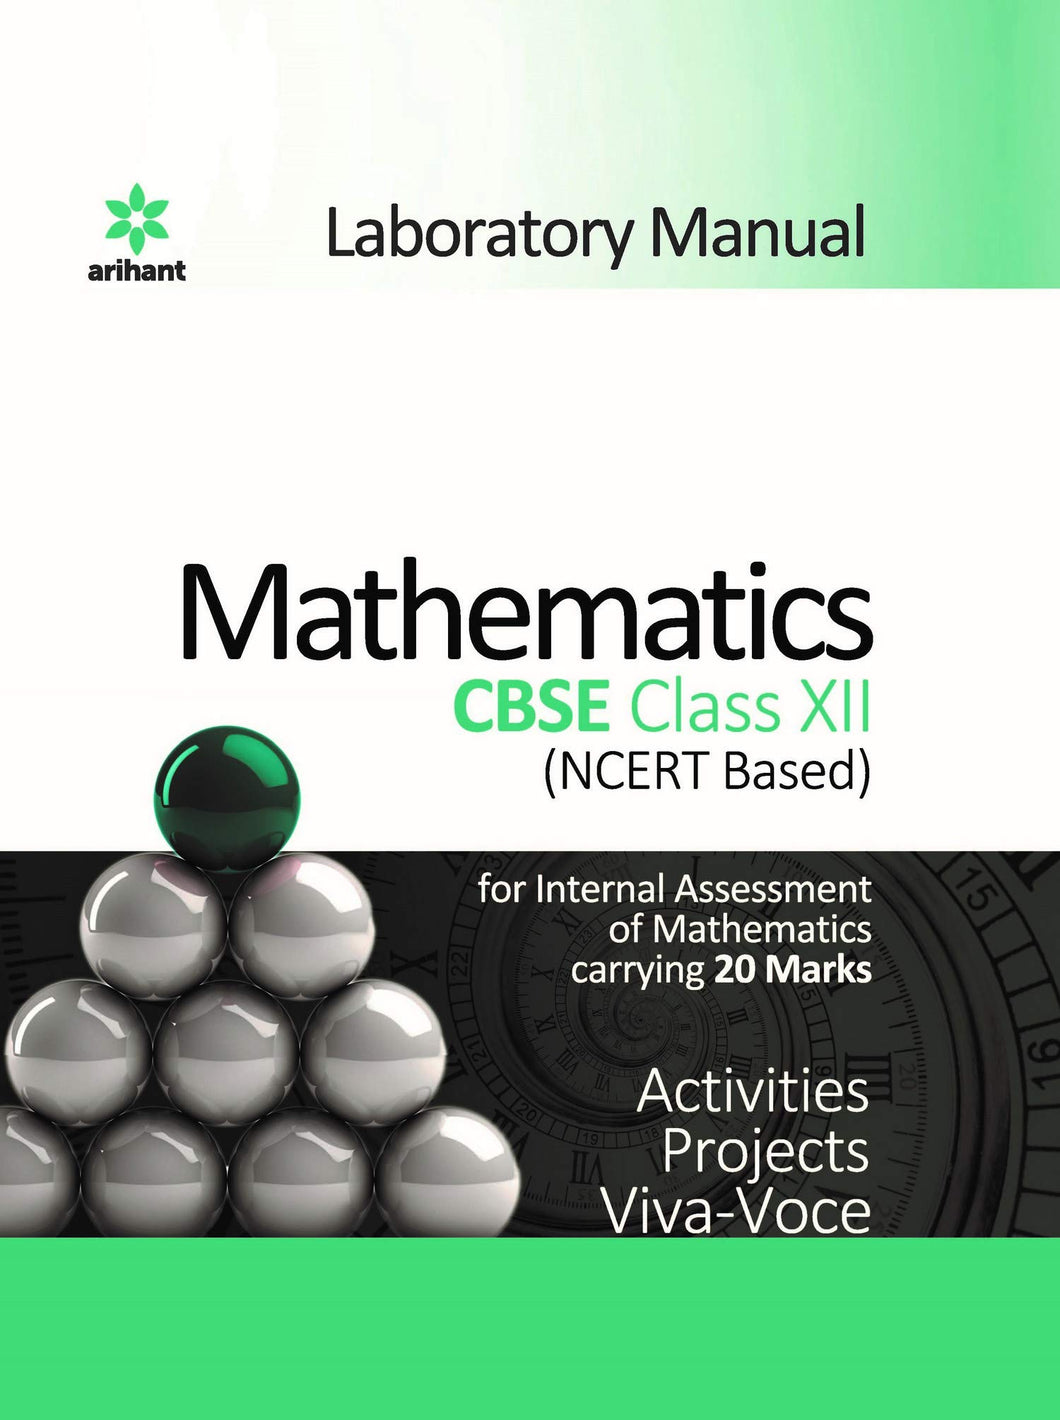 Laboratory Manual Mathematics CBSE class 12